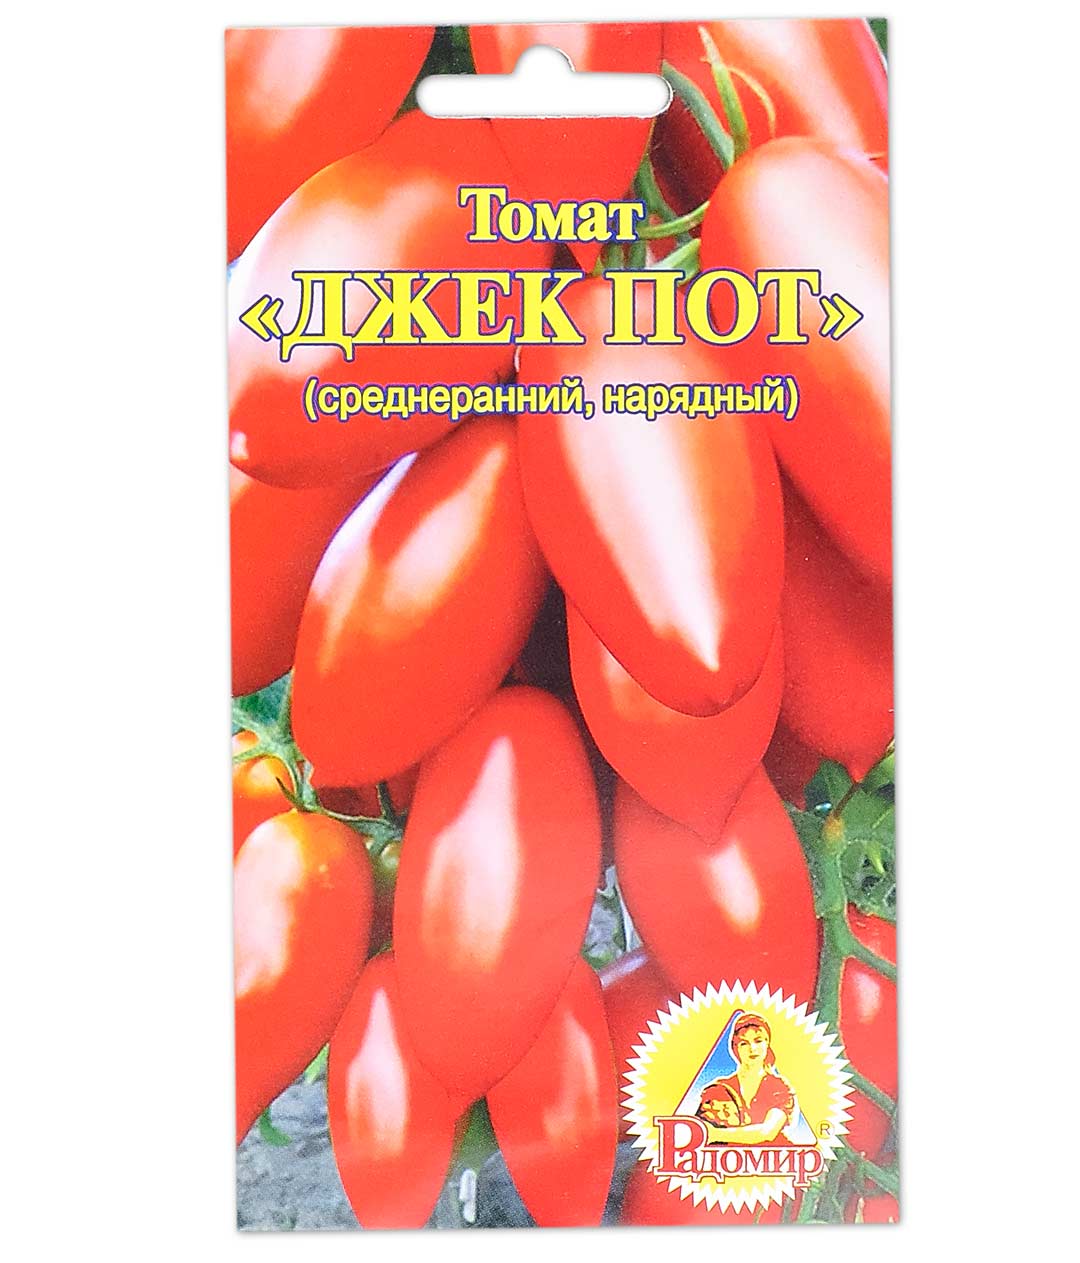 Семена джекпот купить в москве казино вулкан 200 руб подарок без вложений